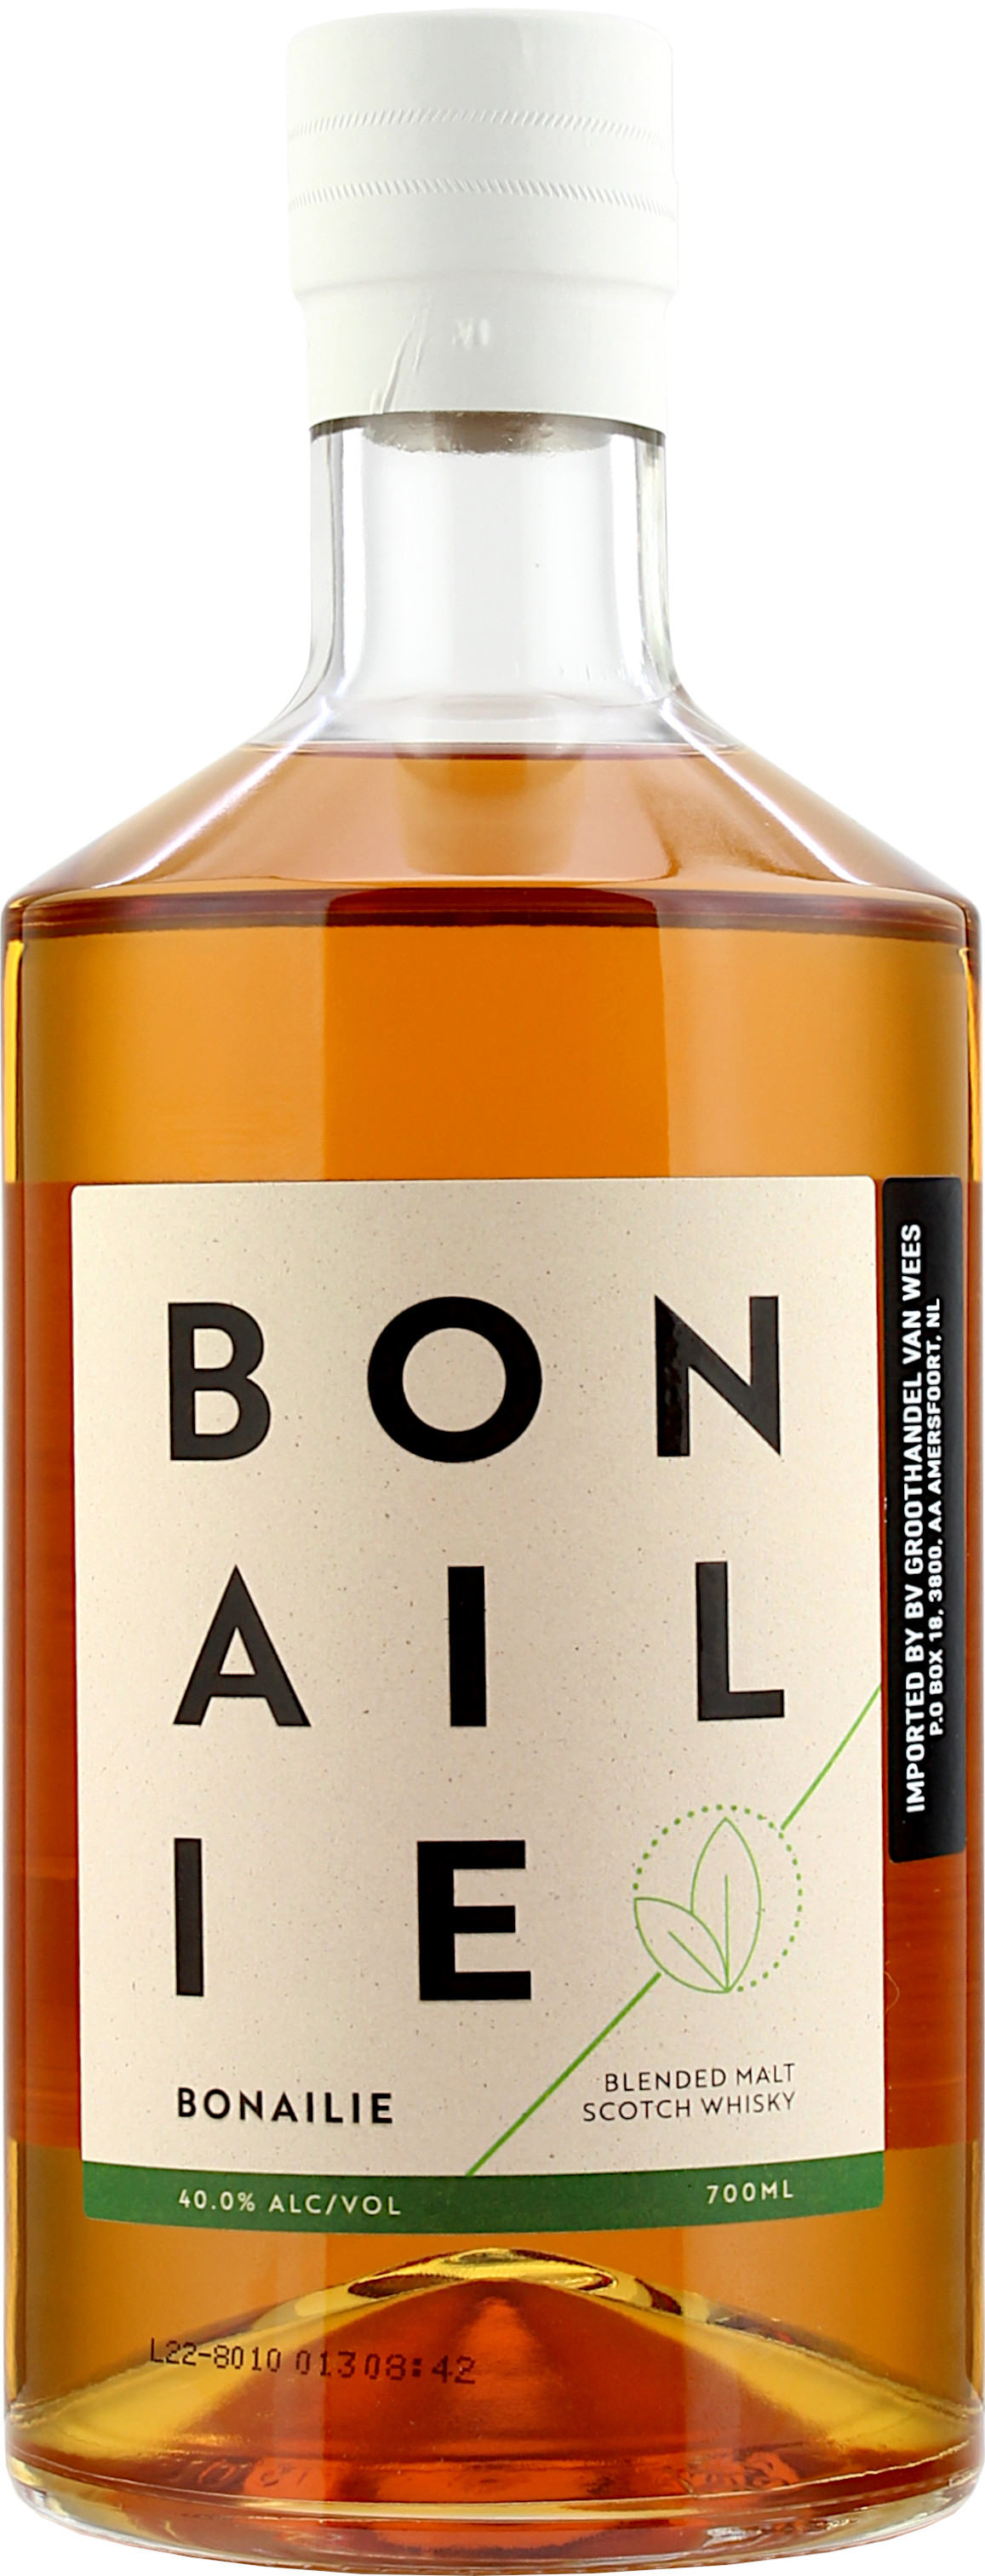 Bladnoch Bonailie Blended Malt Scotch Whisky 40.0% 0,7l